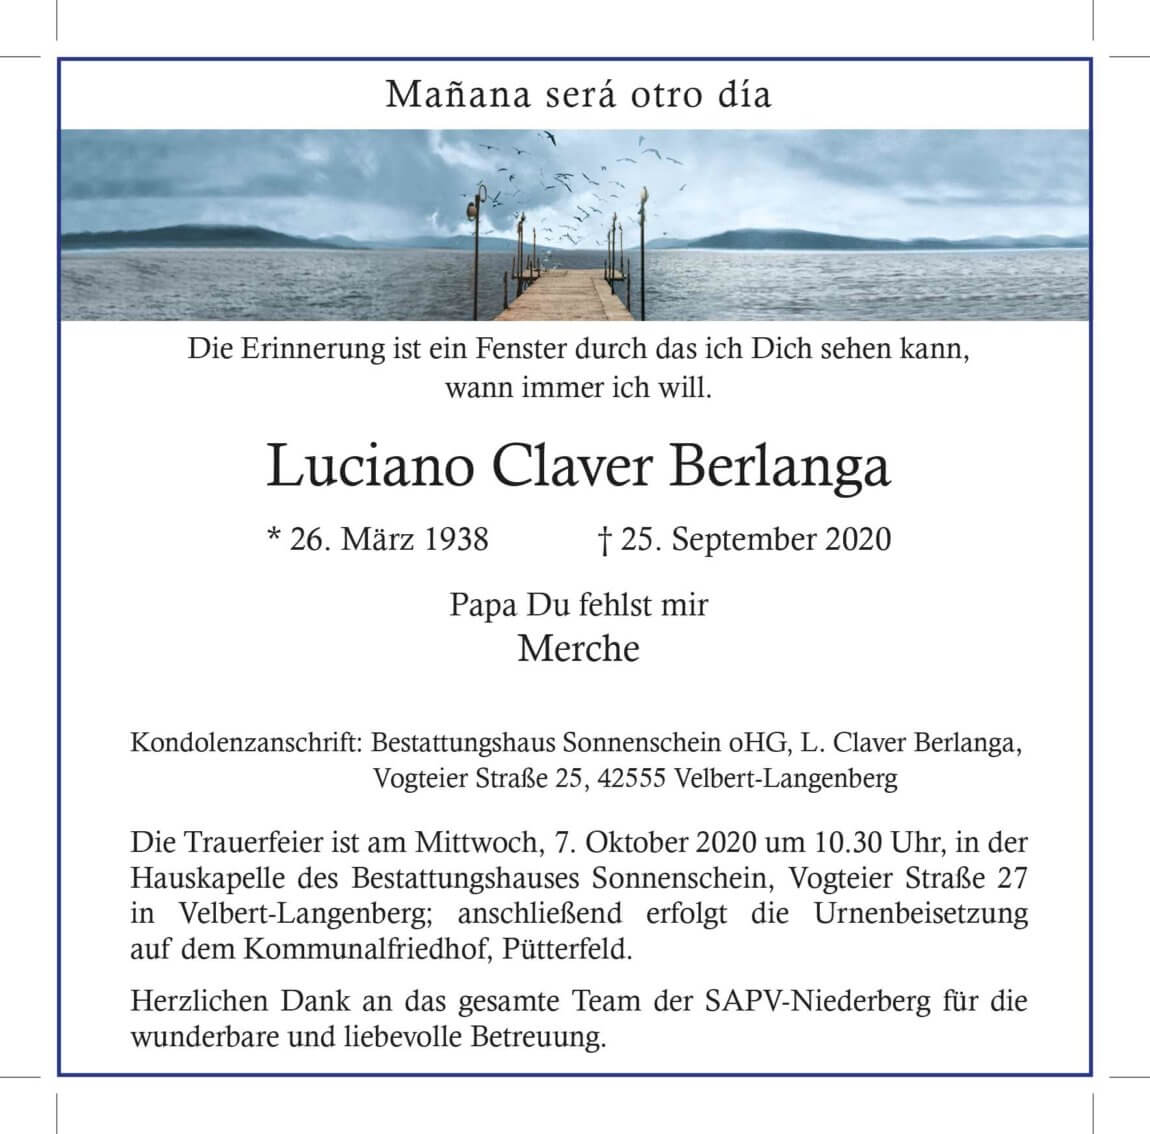 02.10.2020_Claver-Berlanga-Luciano.jpg